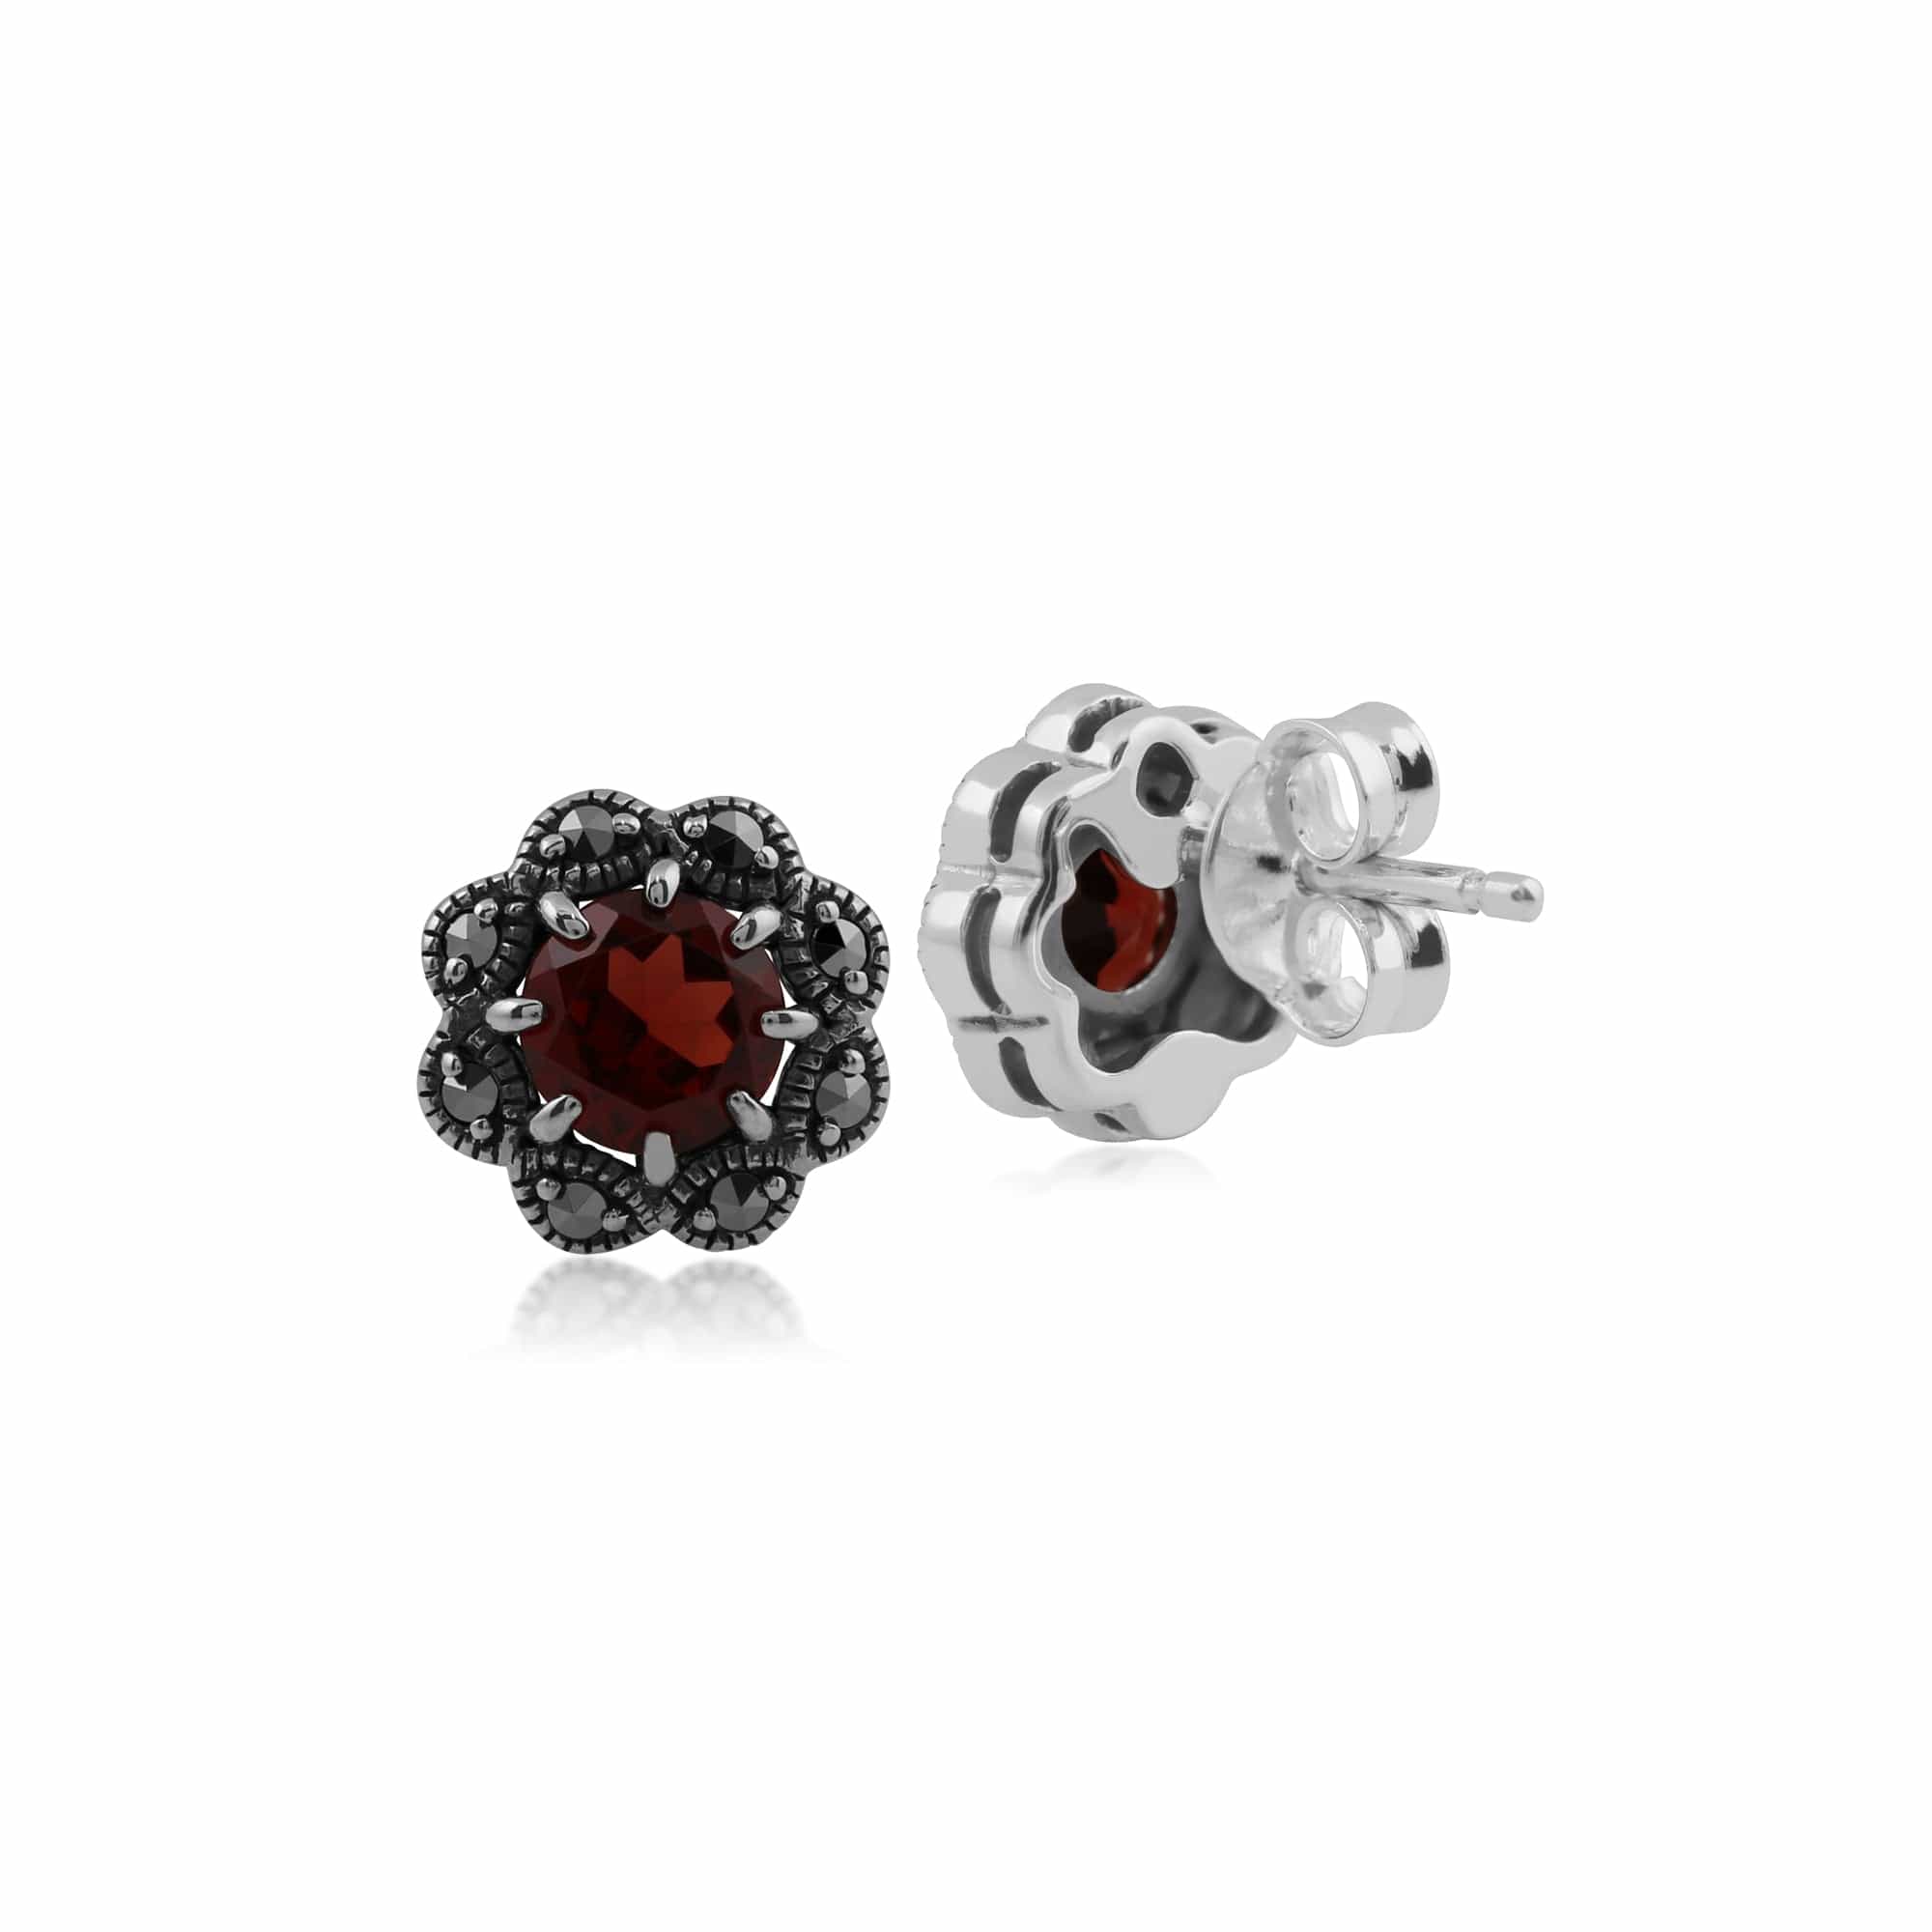 Floral Round Garnet & Marcasite Cluster Stud Earrings in 925 Sterling Silver - Gemondo